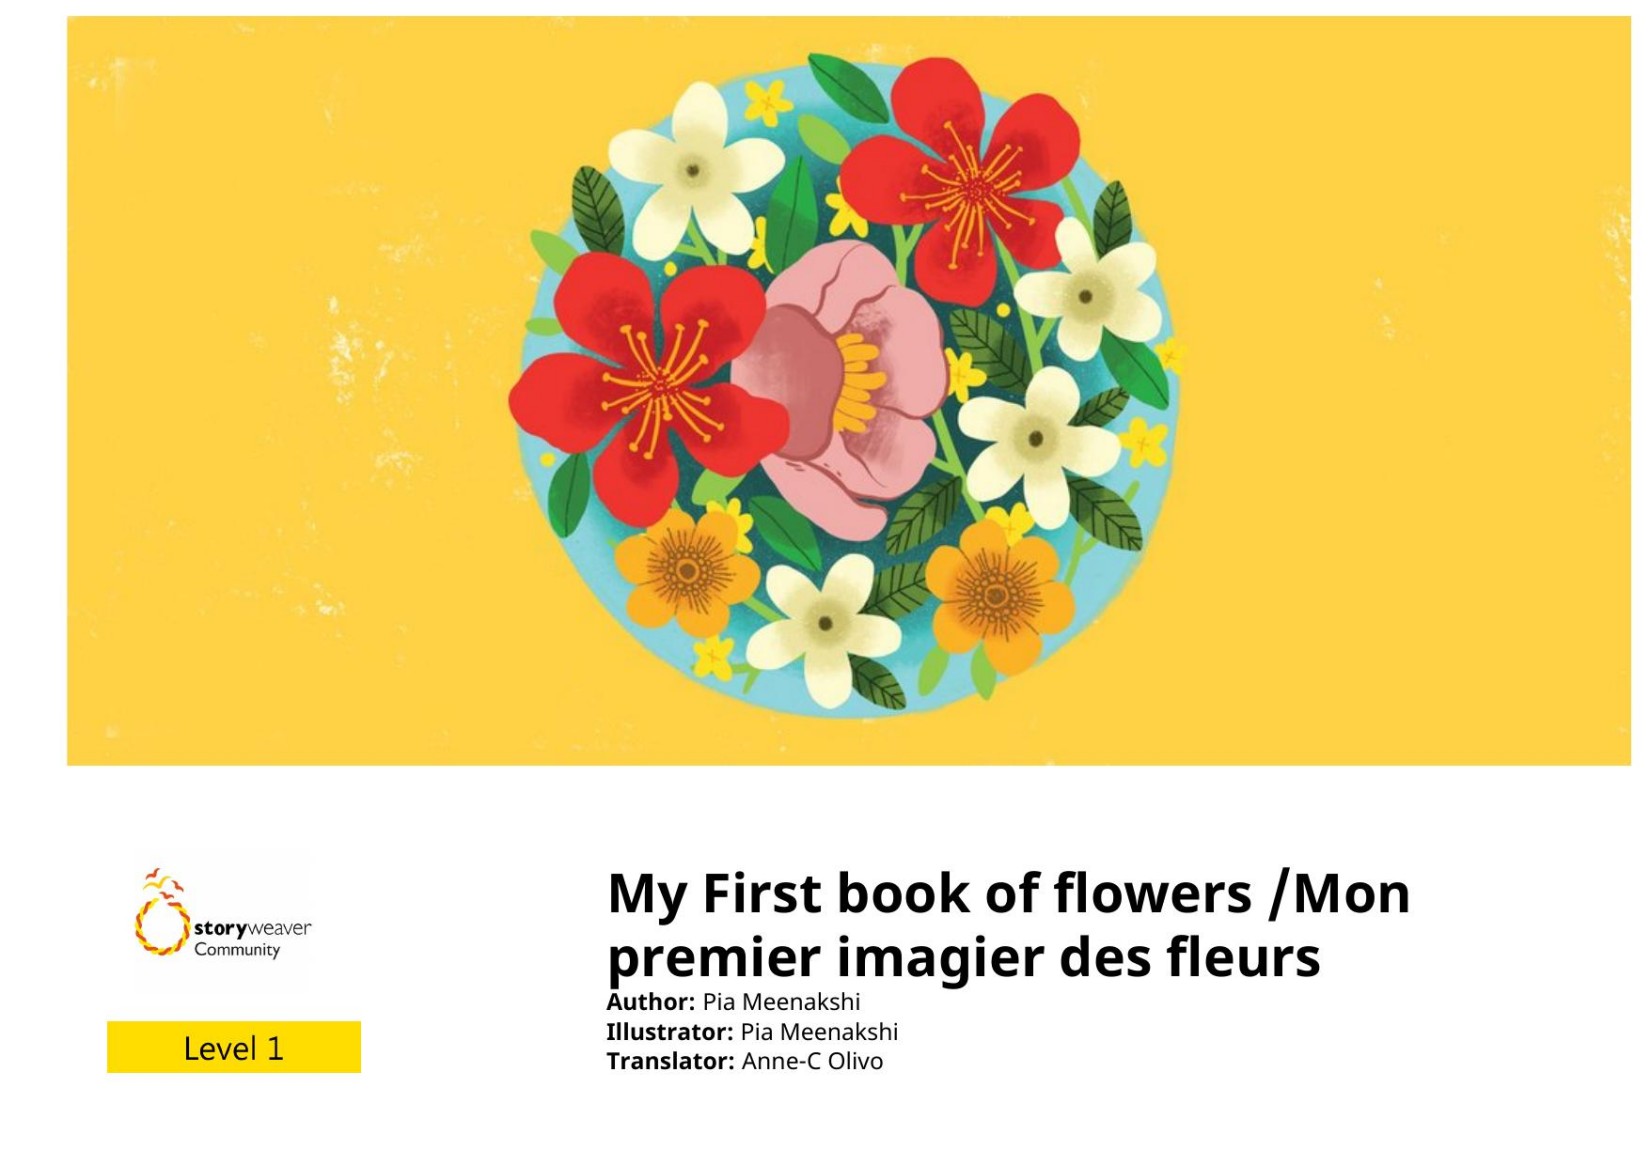 My First book of flowers / Mon premier imagier des fleurs